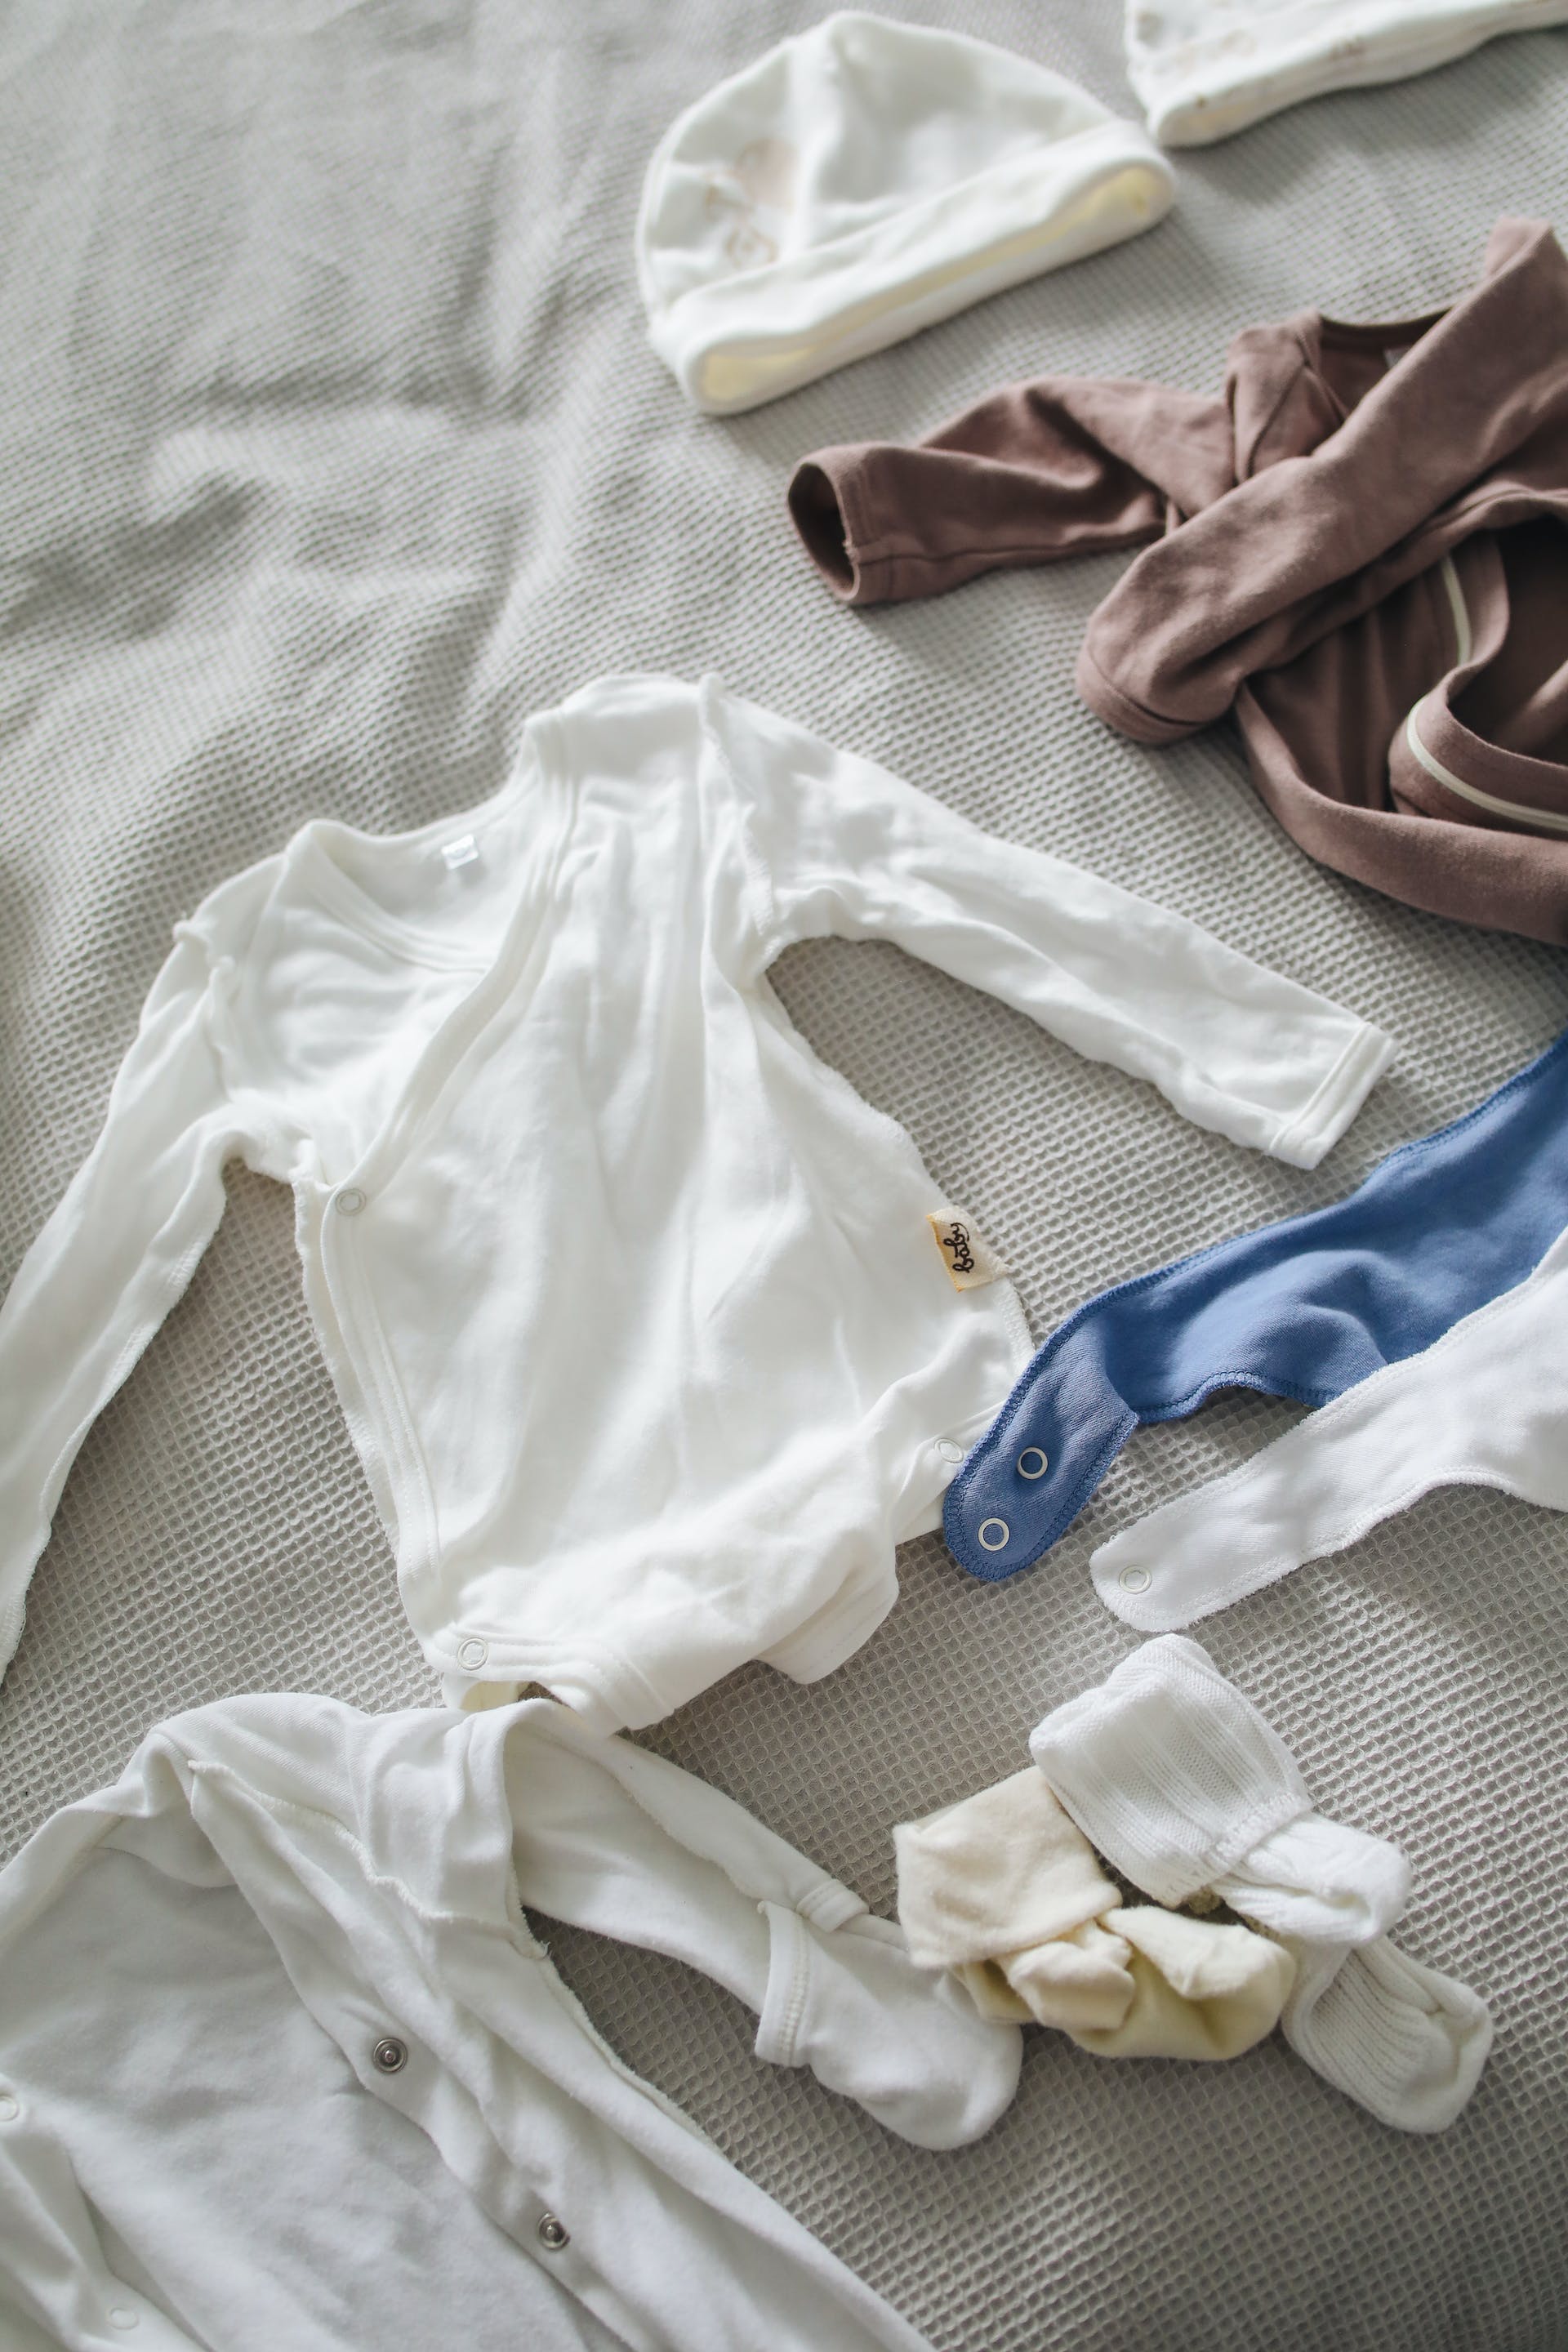 Vêtements de bébé disposés sur une surface | Source : Pexels